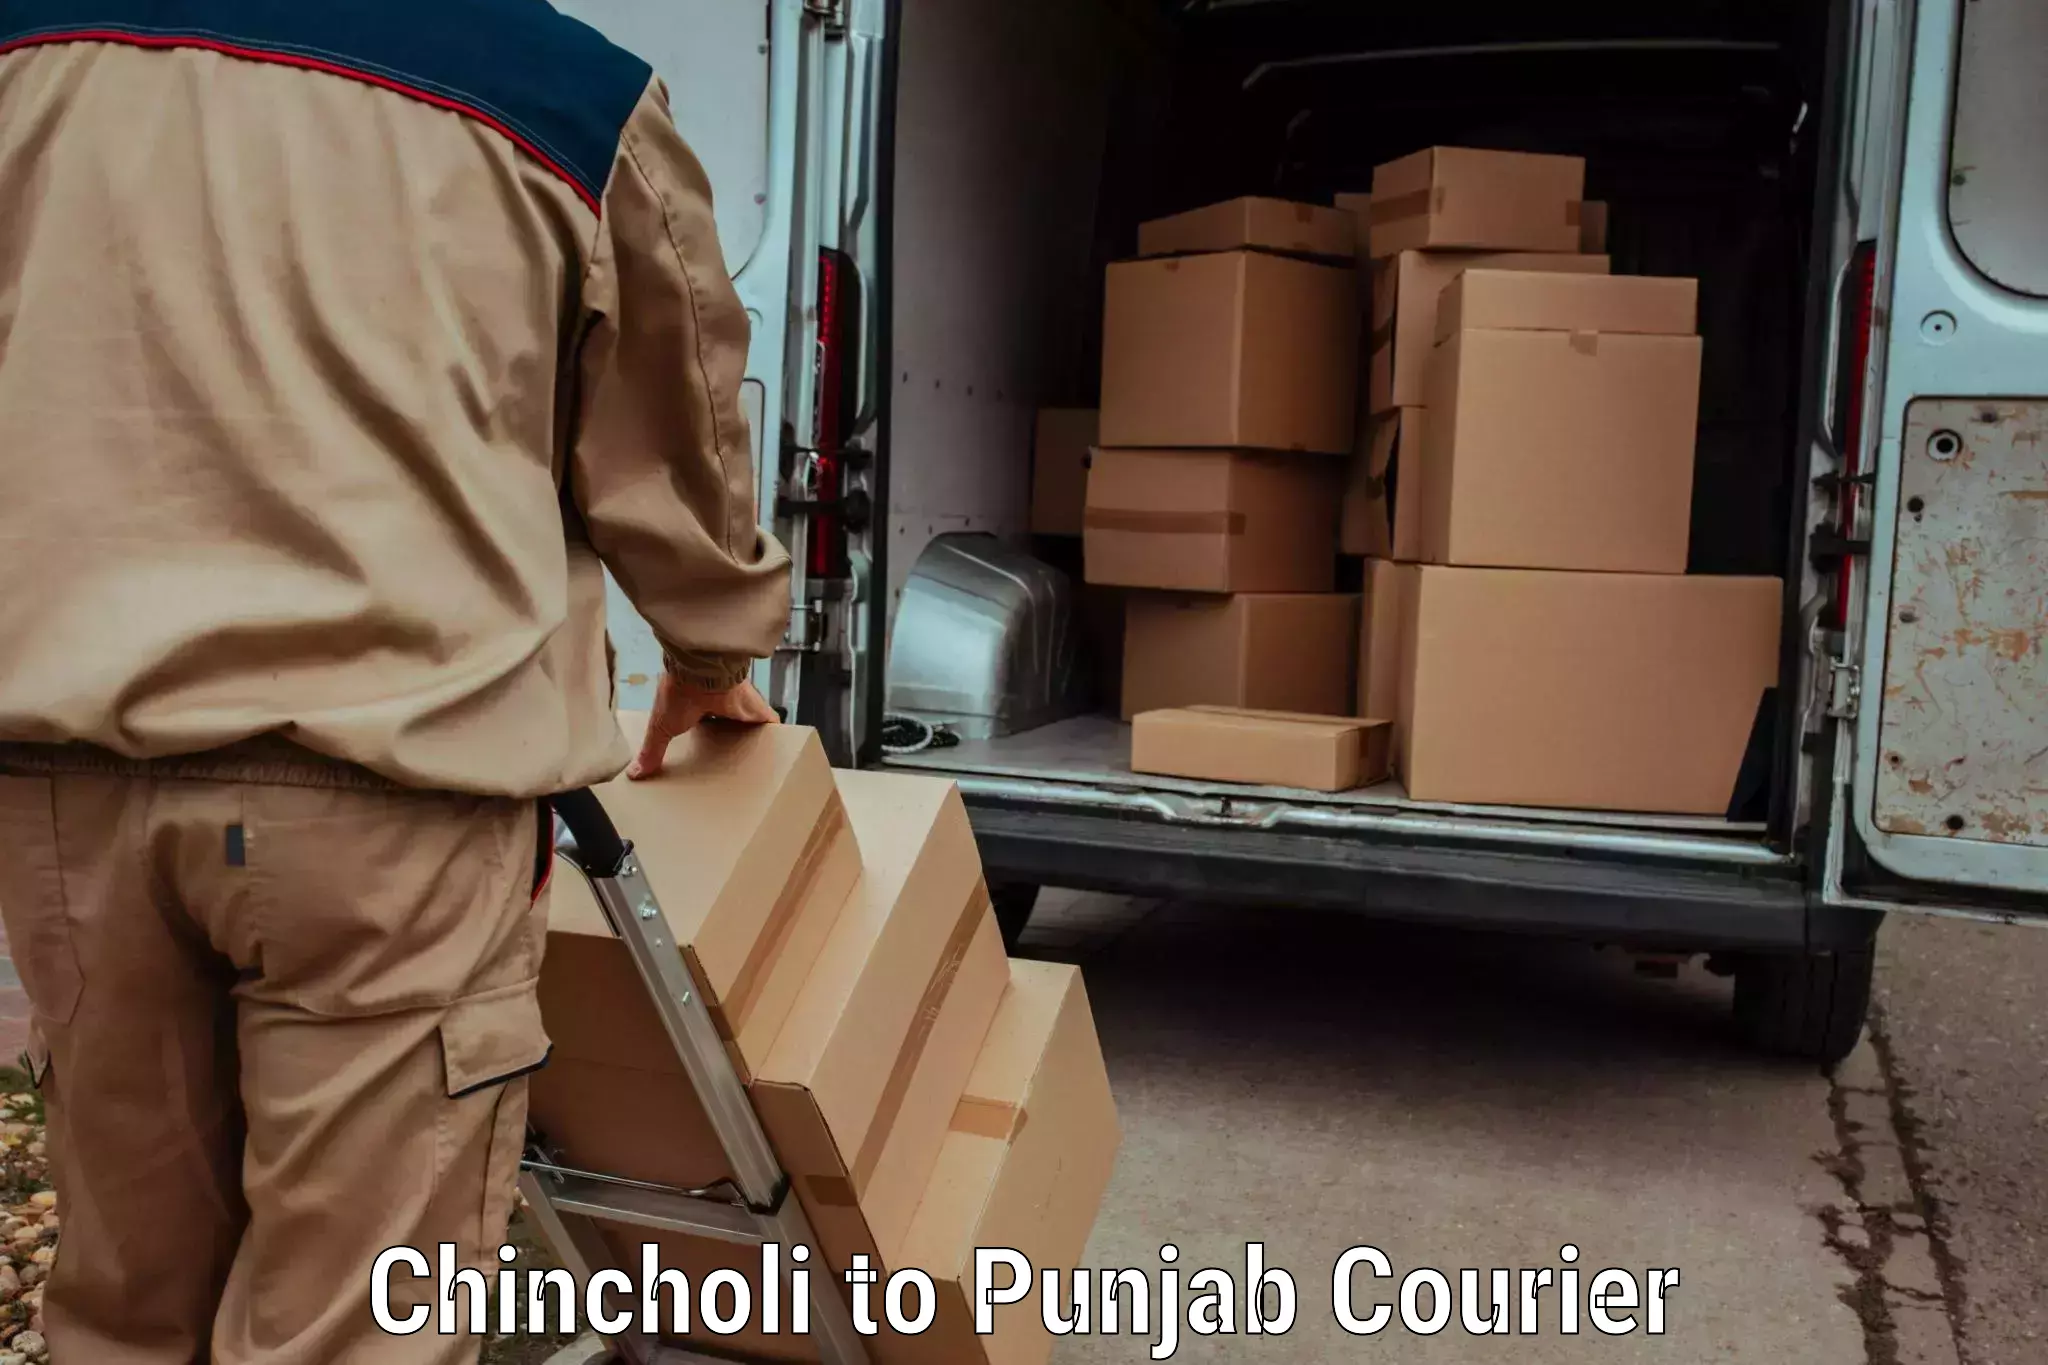 Express logistics service Chincholi to Malerkotla